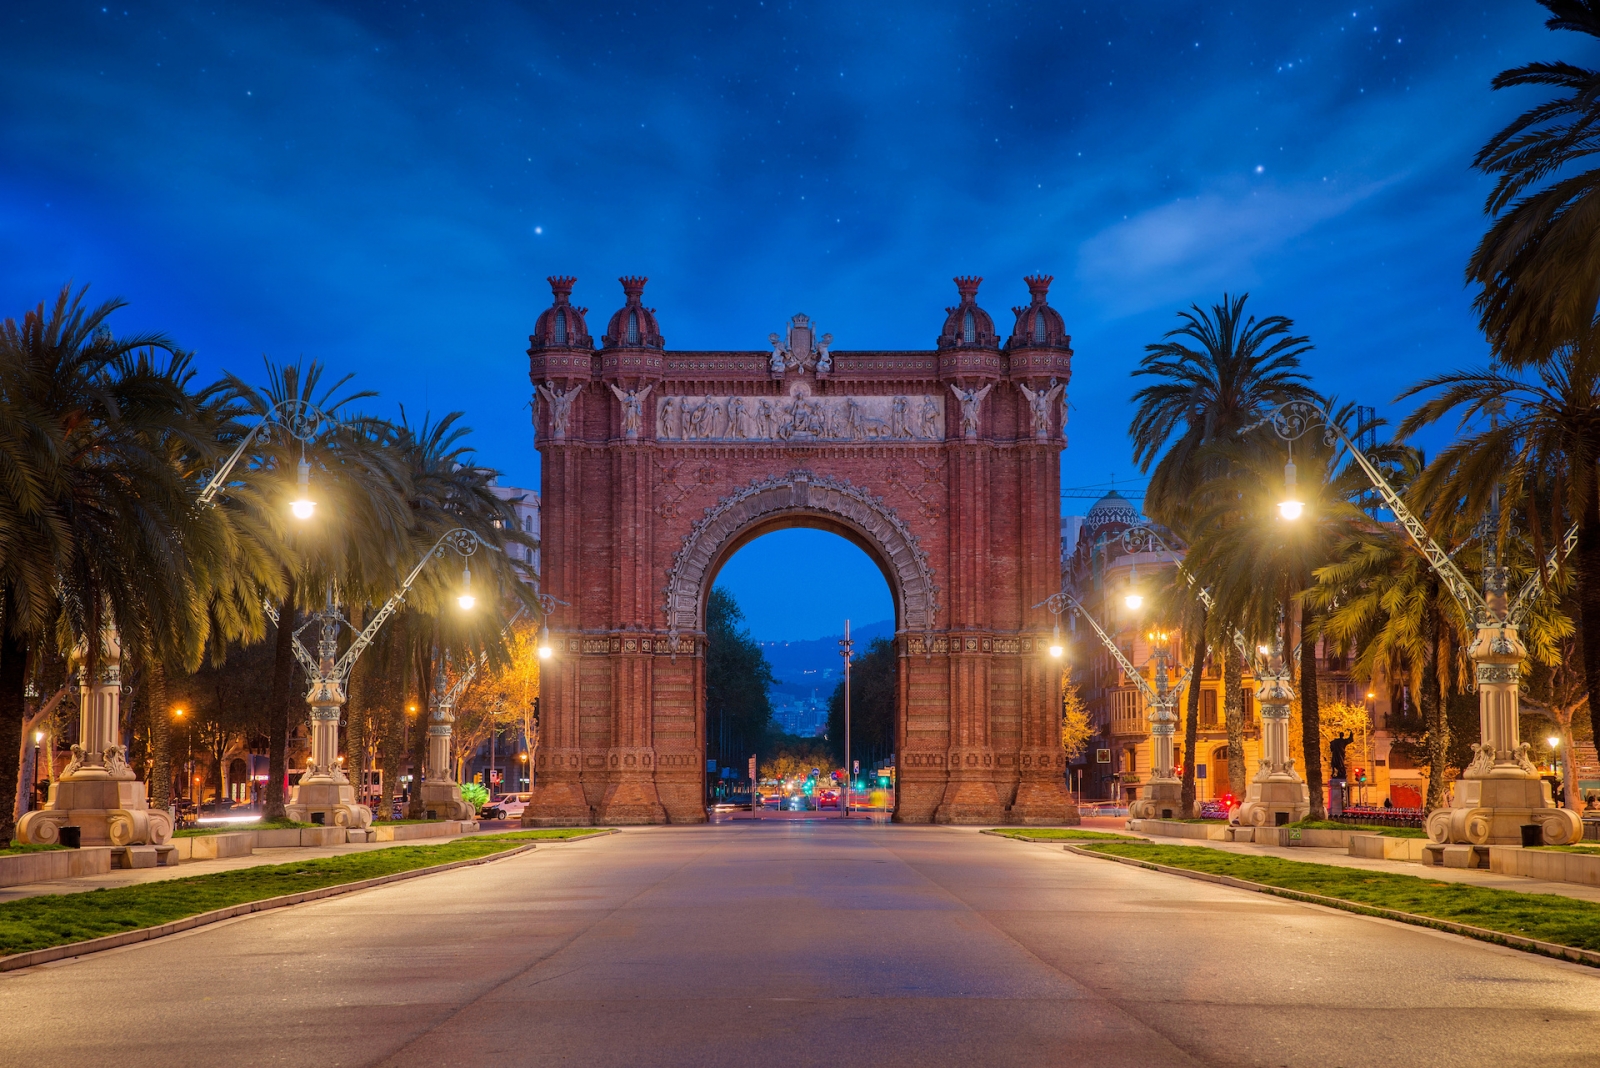 Barcelona Arc de Triomf